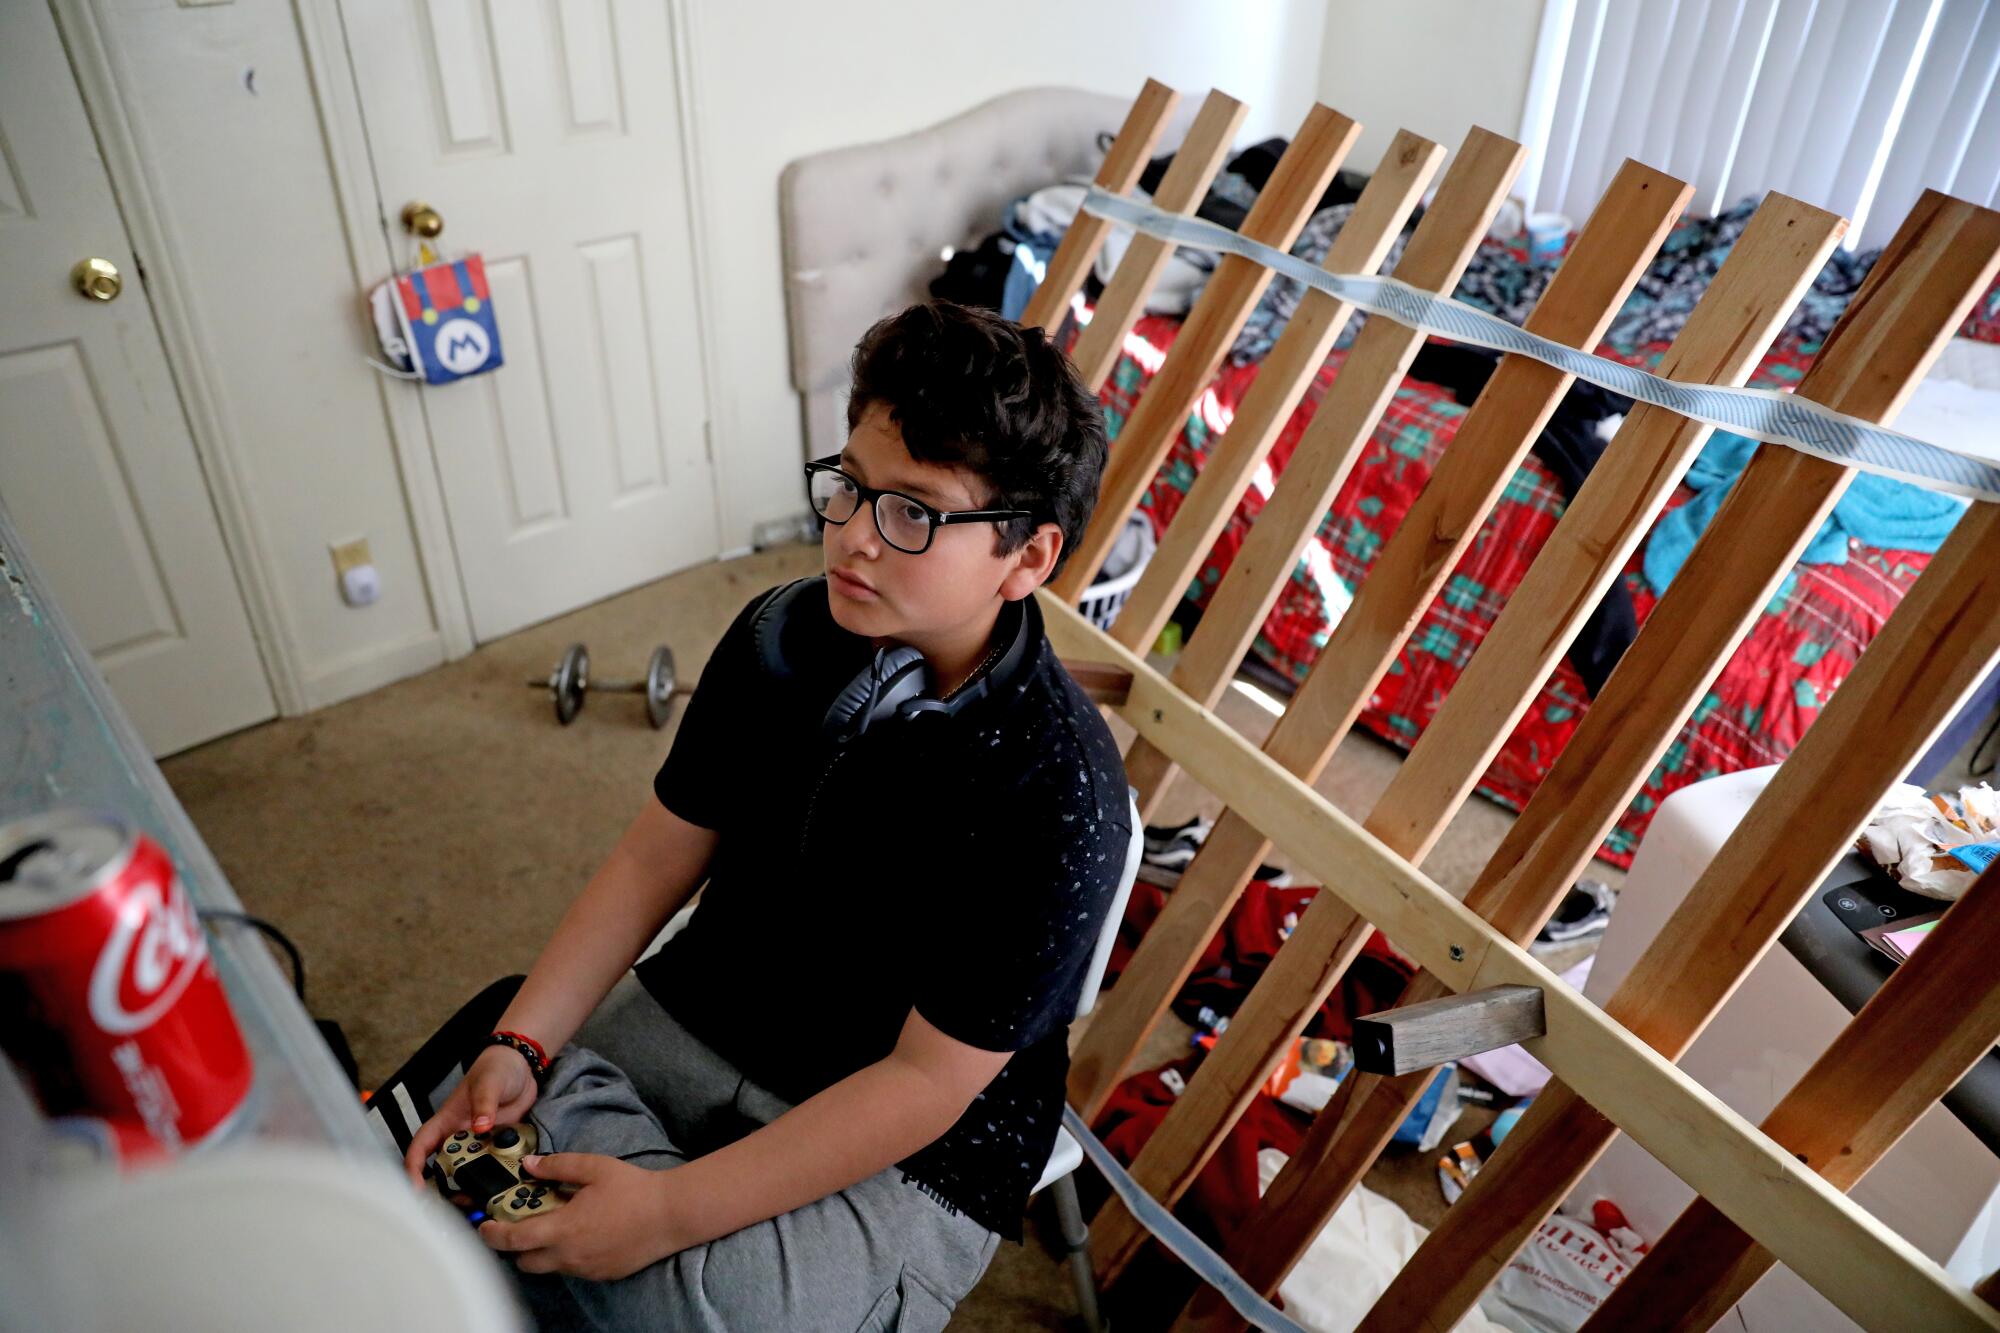 Jacob Gordillo, de 11 años, se divierte con un videojuego en su habitación.